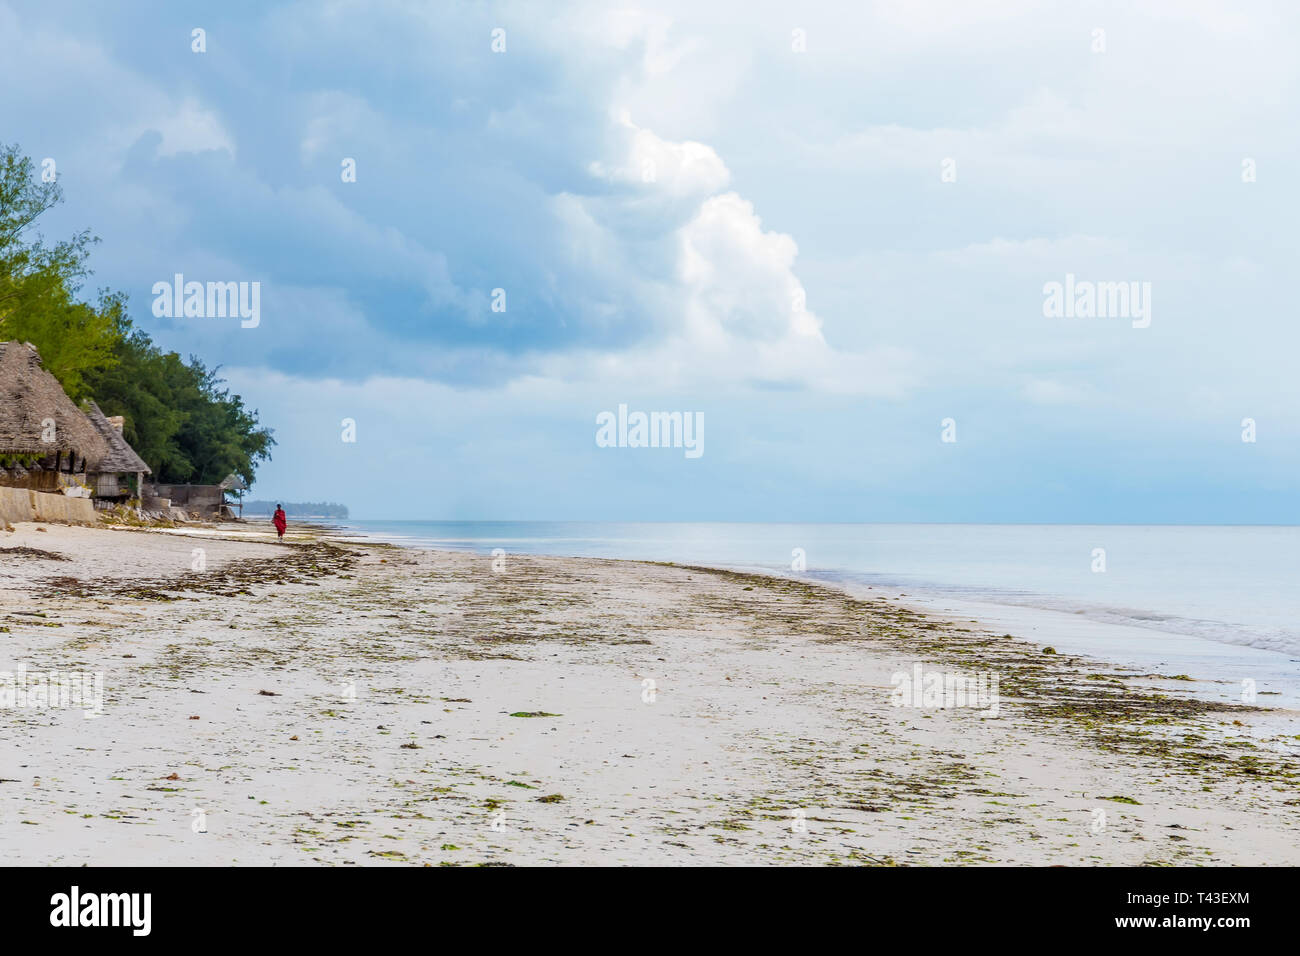 Playa desierta con una solitaria figura en la distancia. Agua Azul y cielo azul, sin nubes. Foto de stock